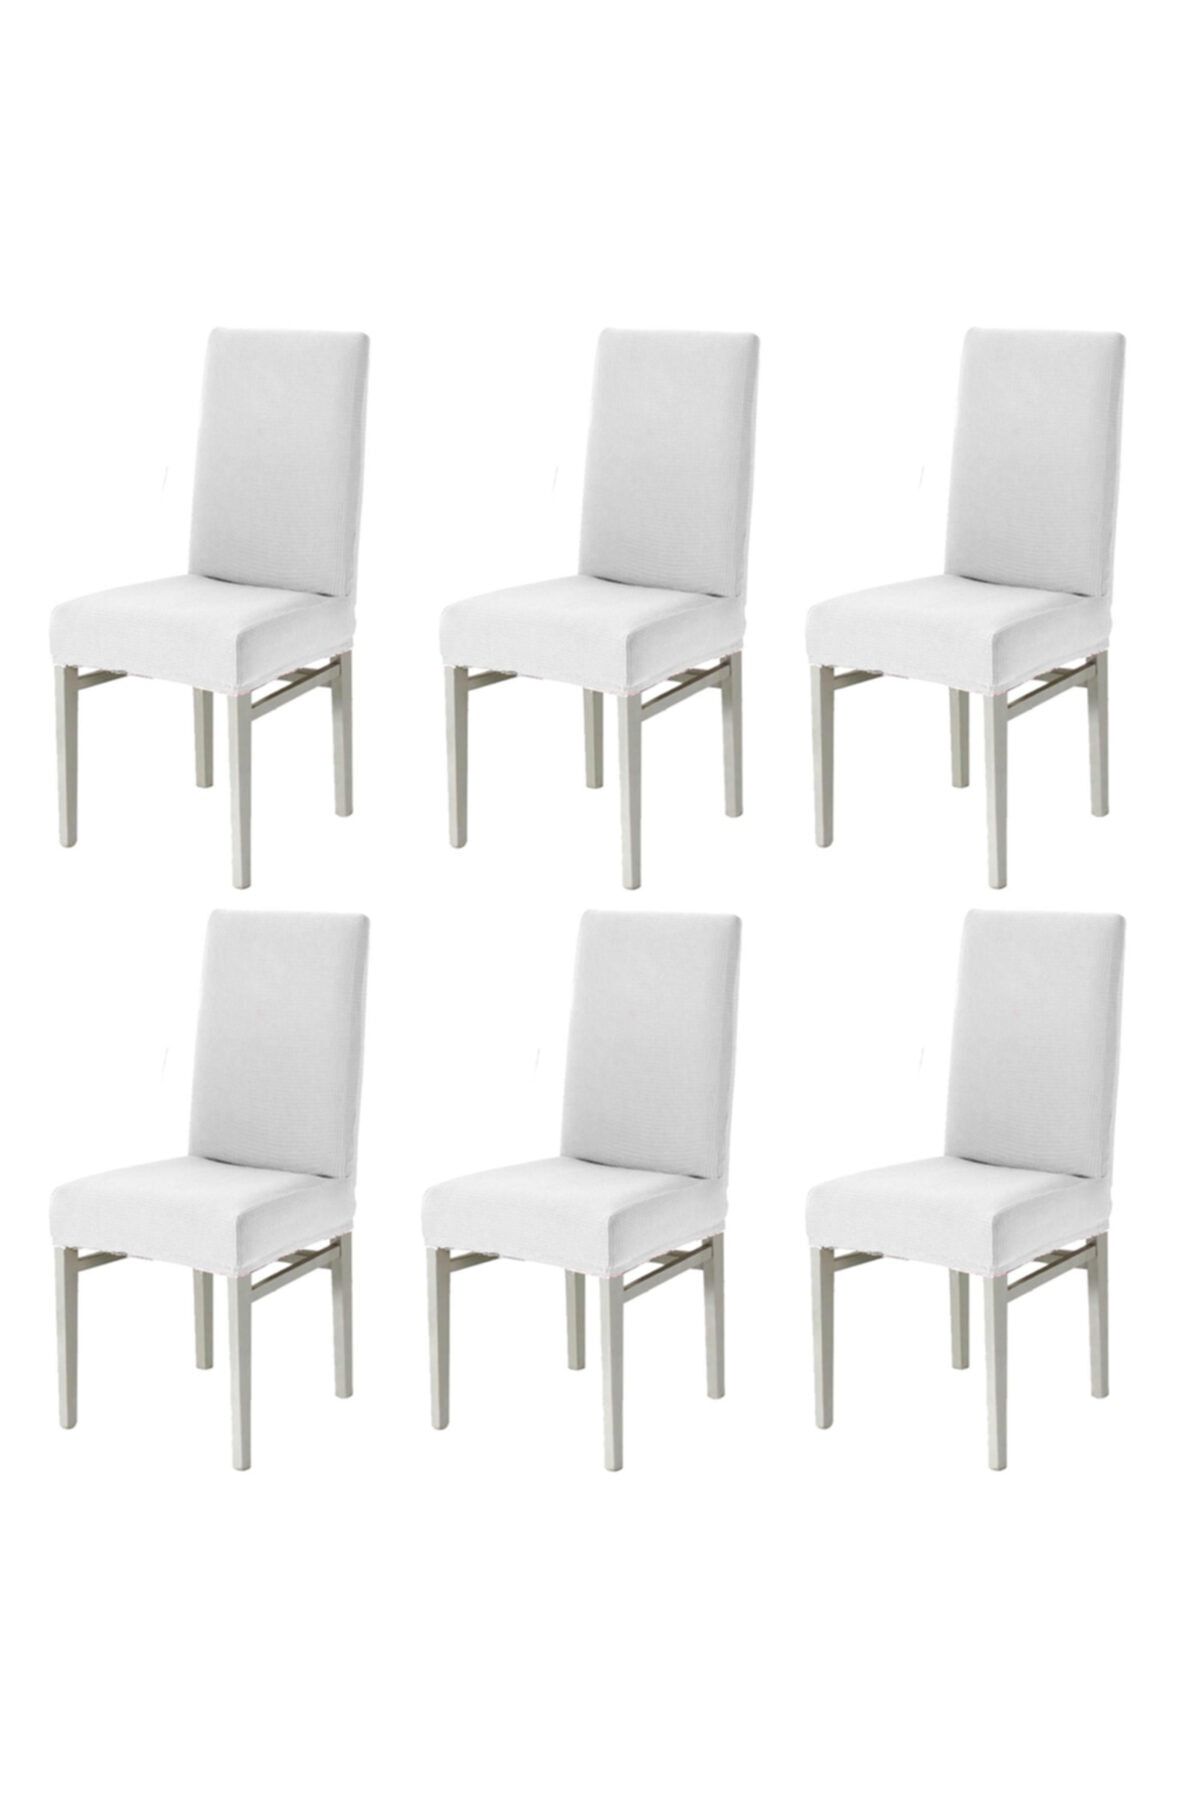 Faiend Beyaz Sandalye Kılıfı Yıkanabilir Likralı Esnek Lastikli Sandalye Örtü 6 Adet